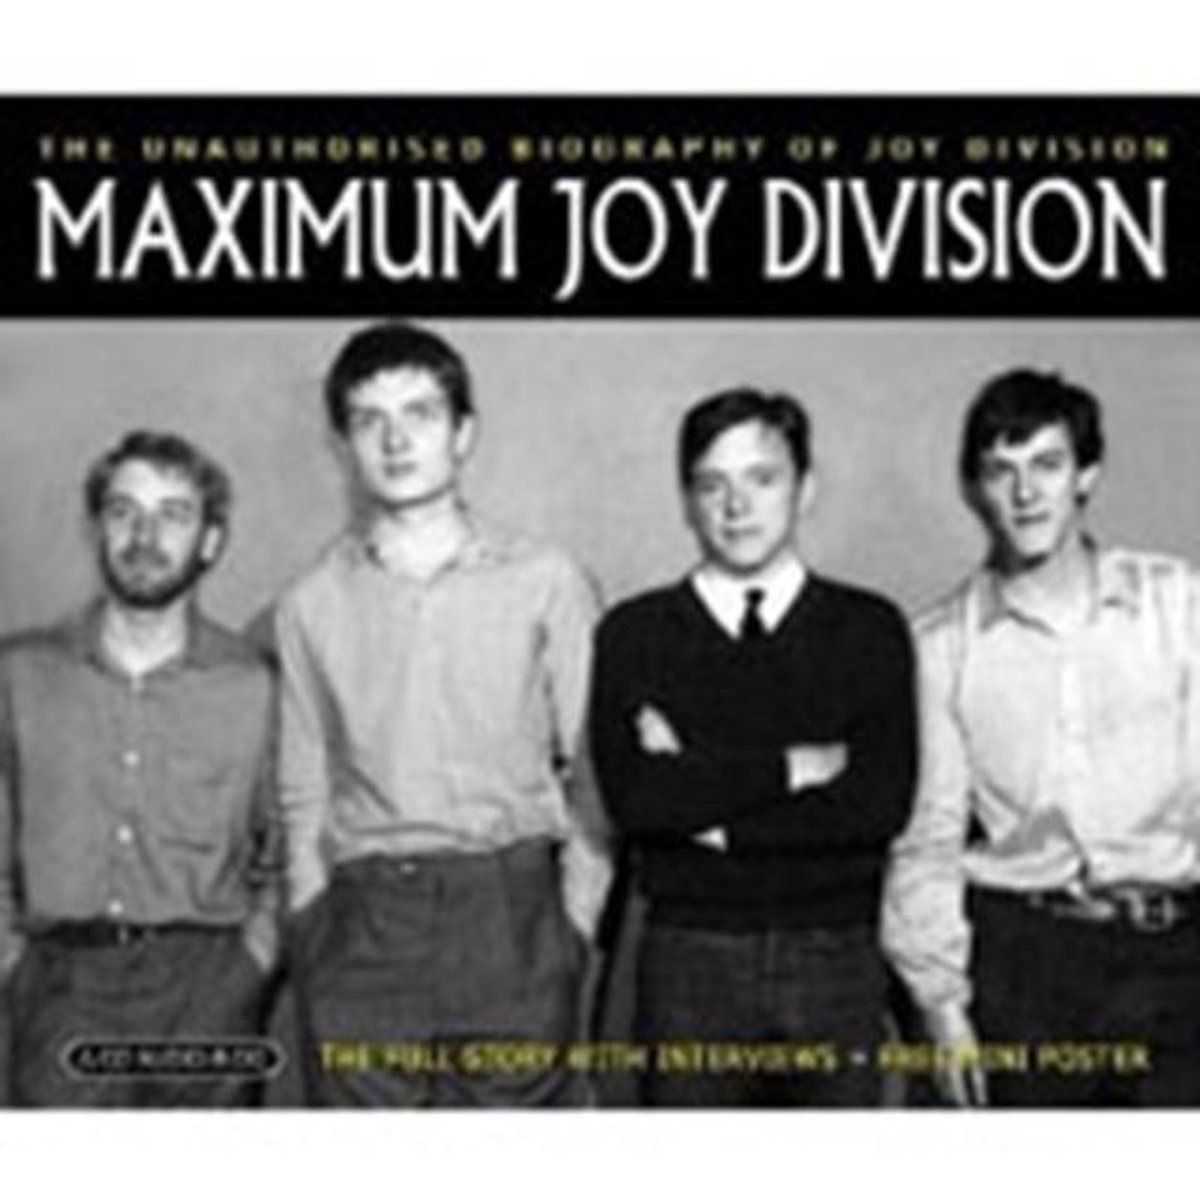 Maximum Joy Division - Joy Division